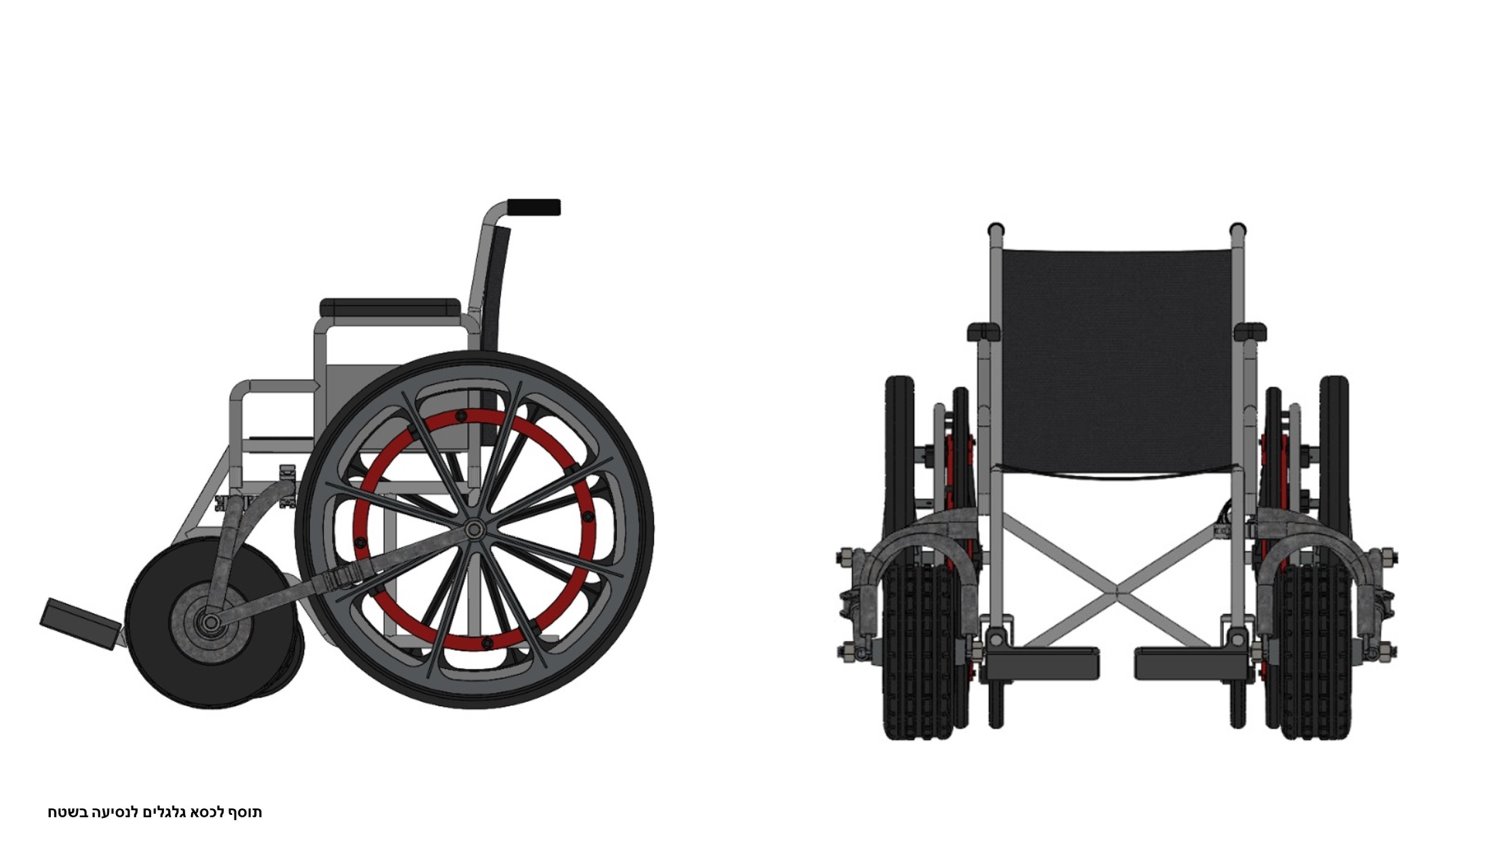 מערכת לנסיעת כיסא גלגלים בשטח שפתחו הסטודנטים מאשדוד. צילום באדיבות רן כהן